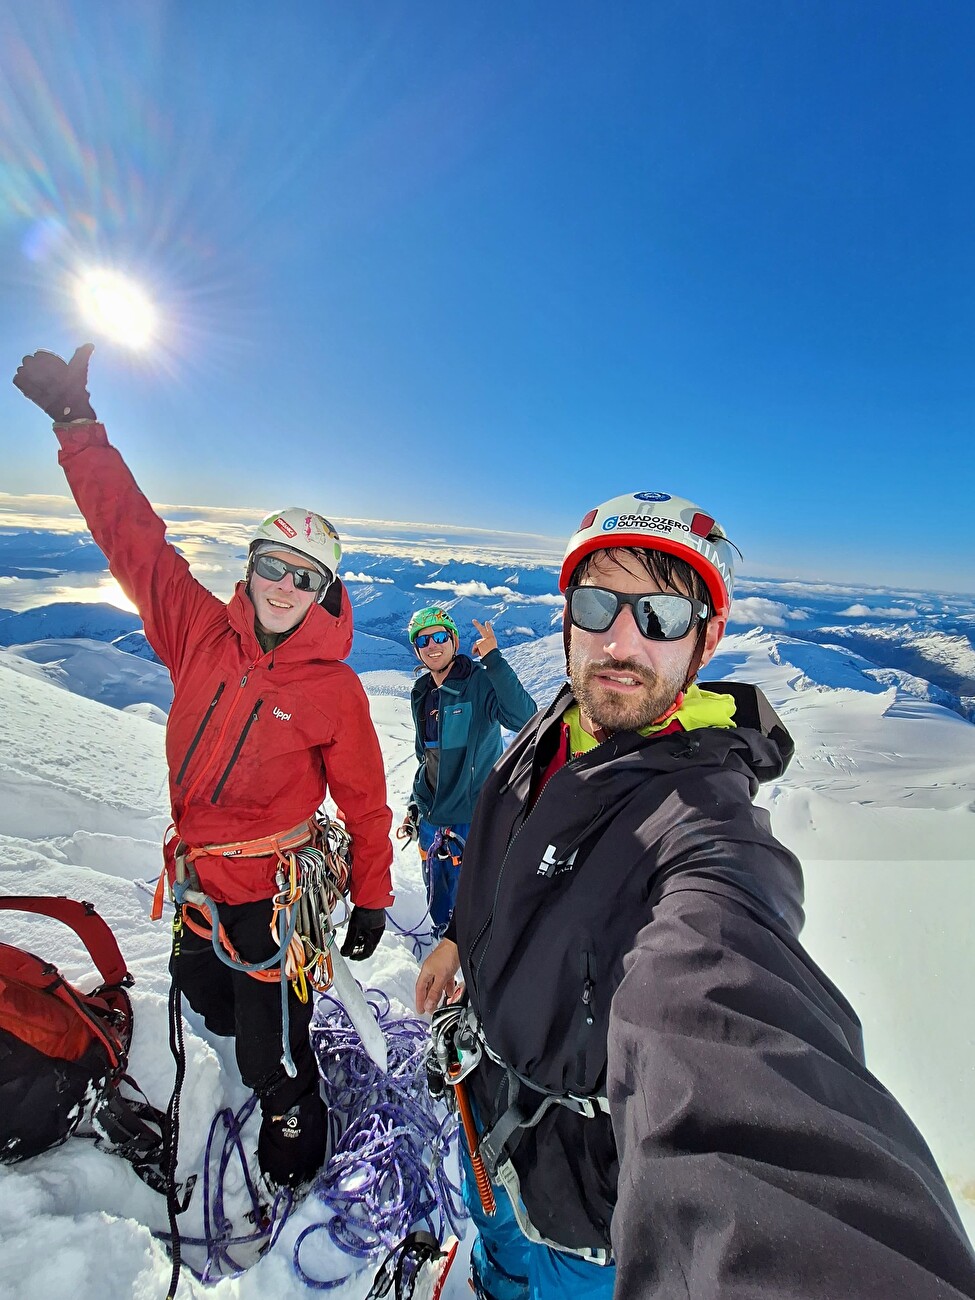 Le sommet ouest de Sarmiento en Patagonie escaladé en style alpin par Hernan Rodriguez, Cristobal Señoret, Nicolas Secul